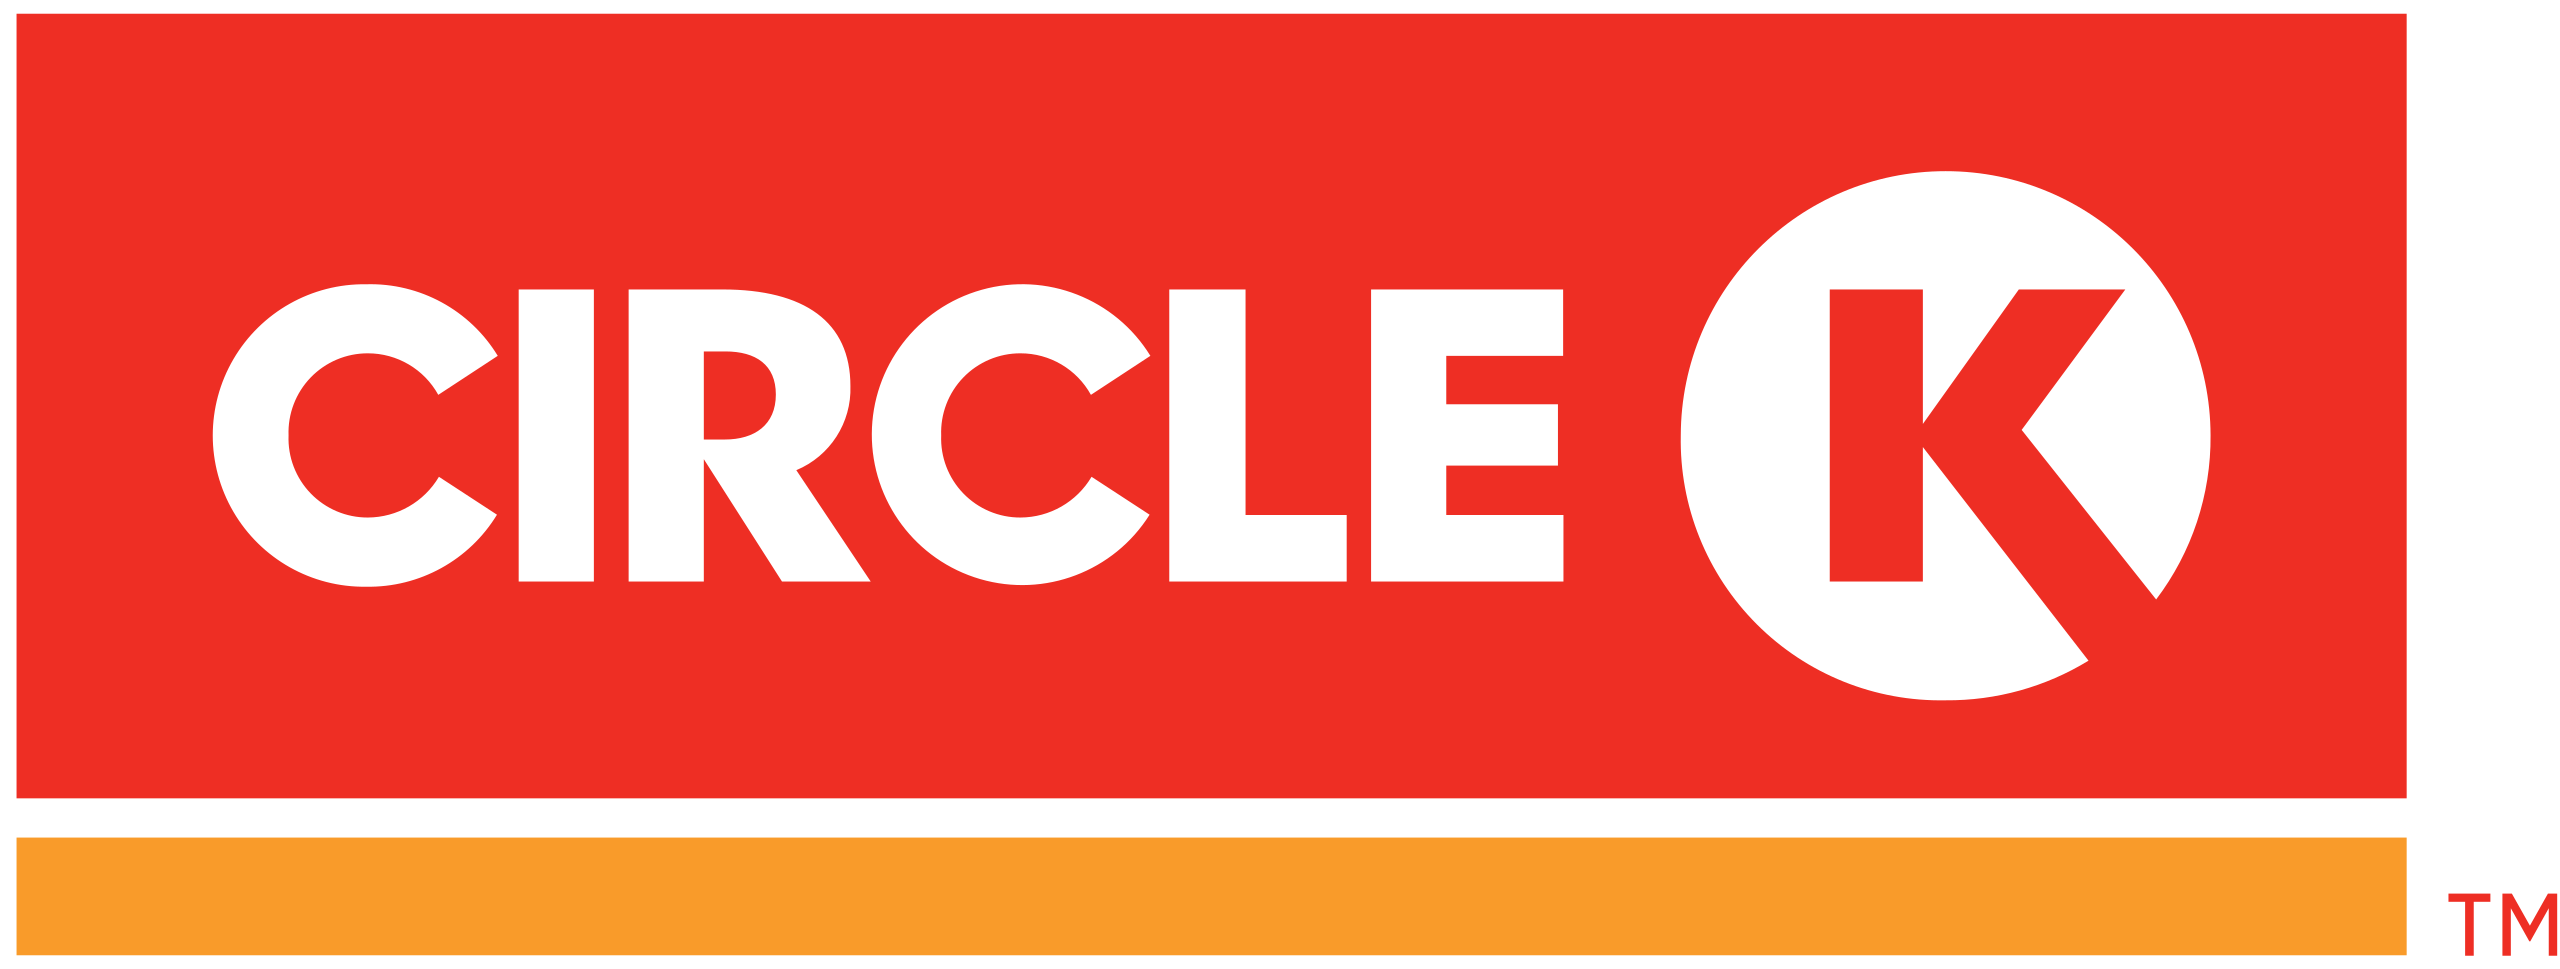 Circle K coupon codes, promo codes and deals